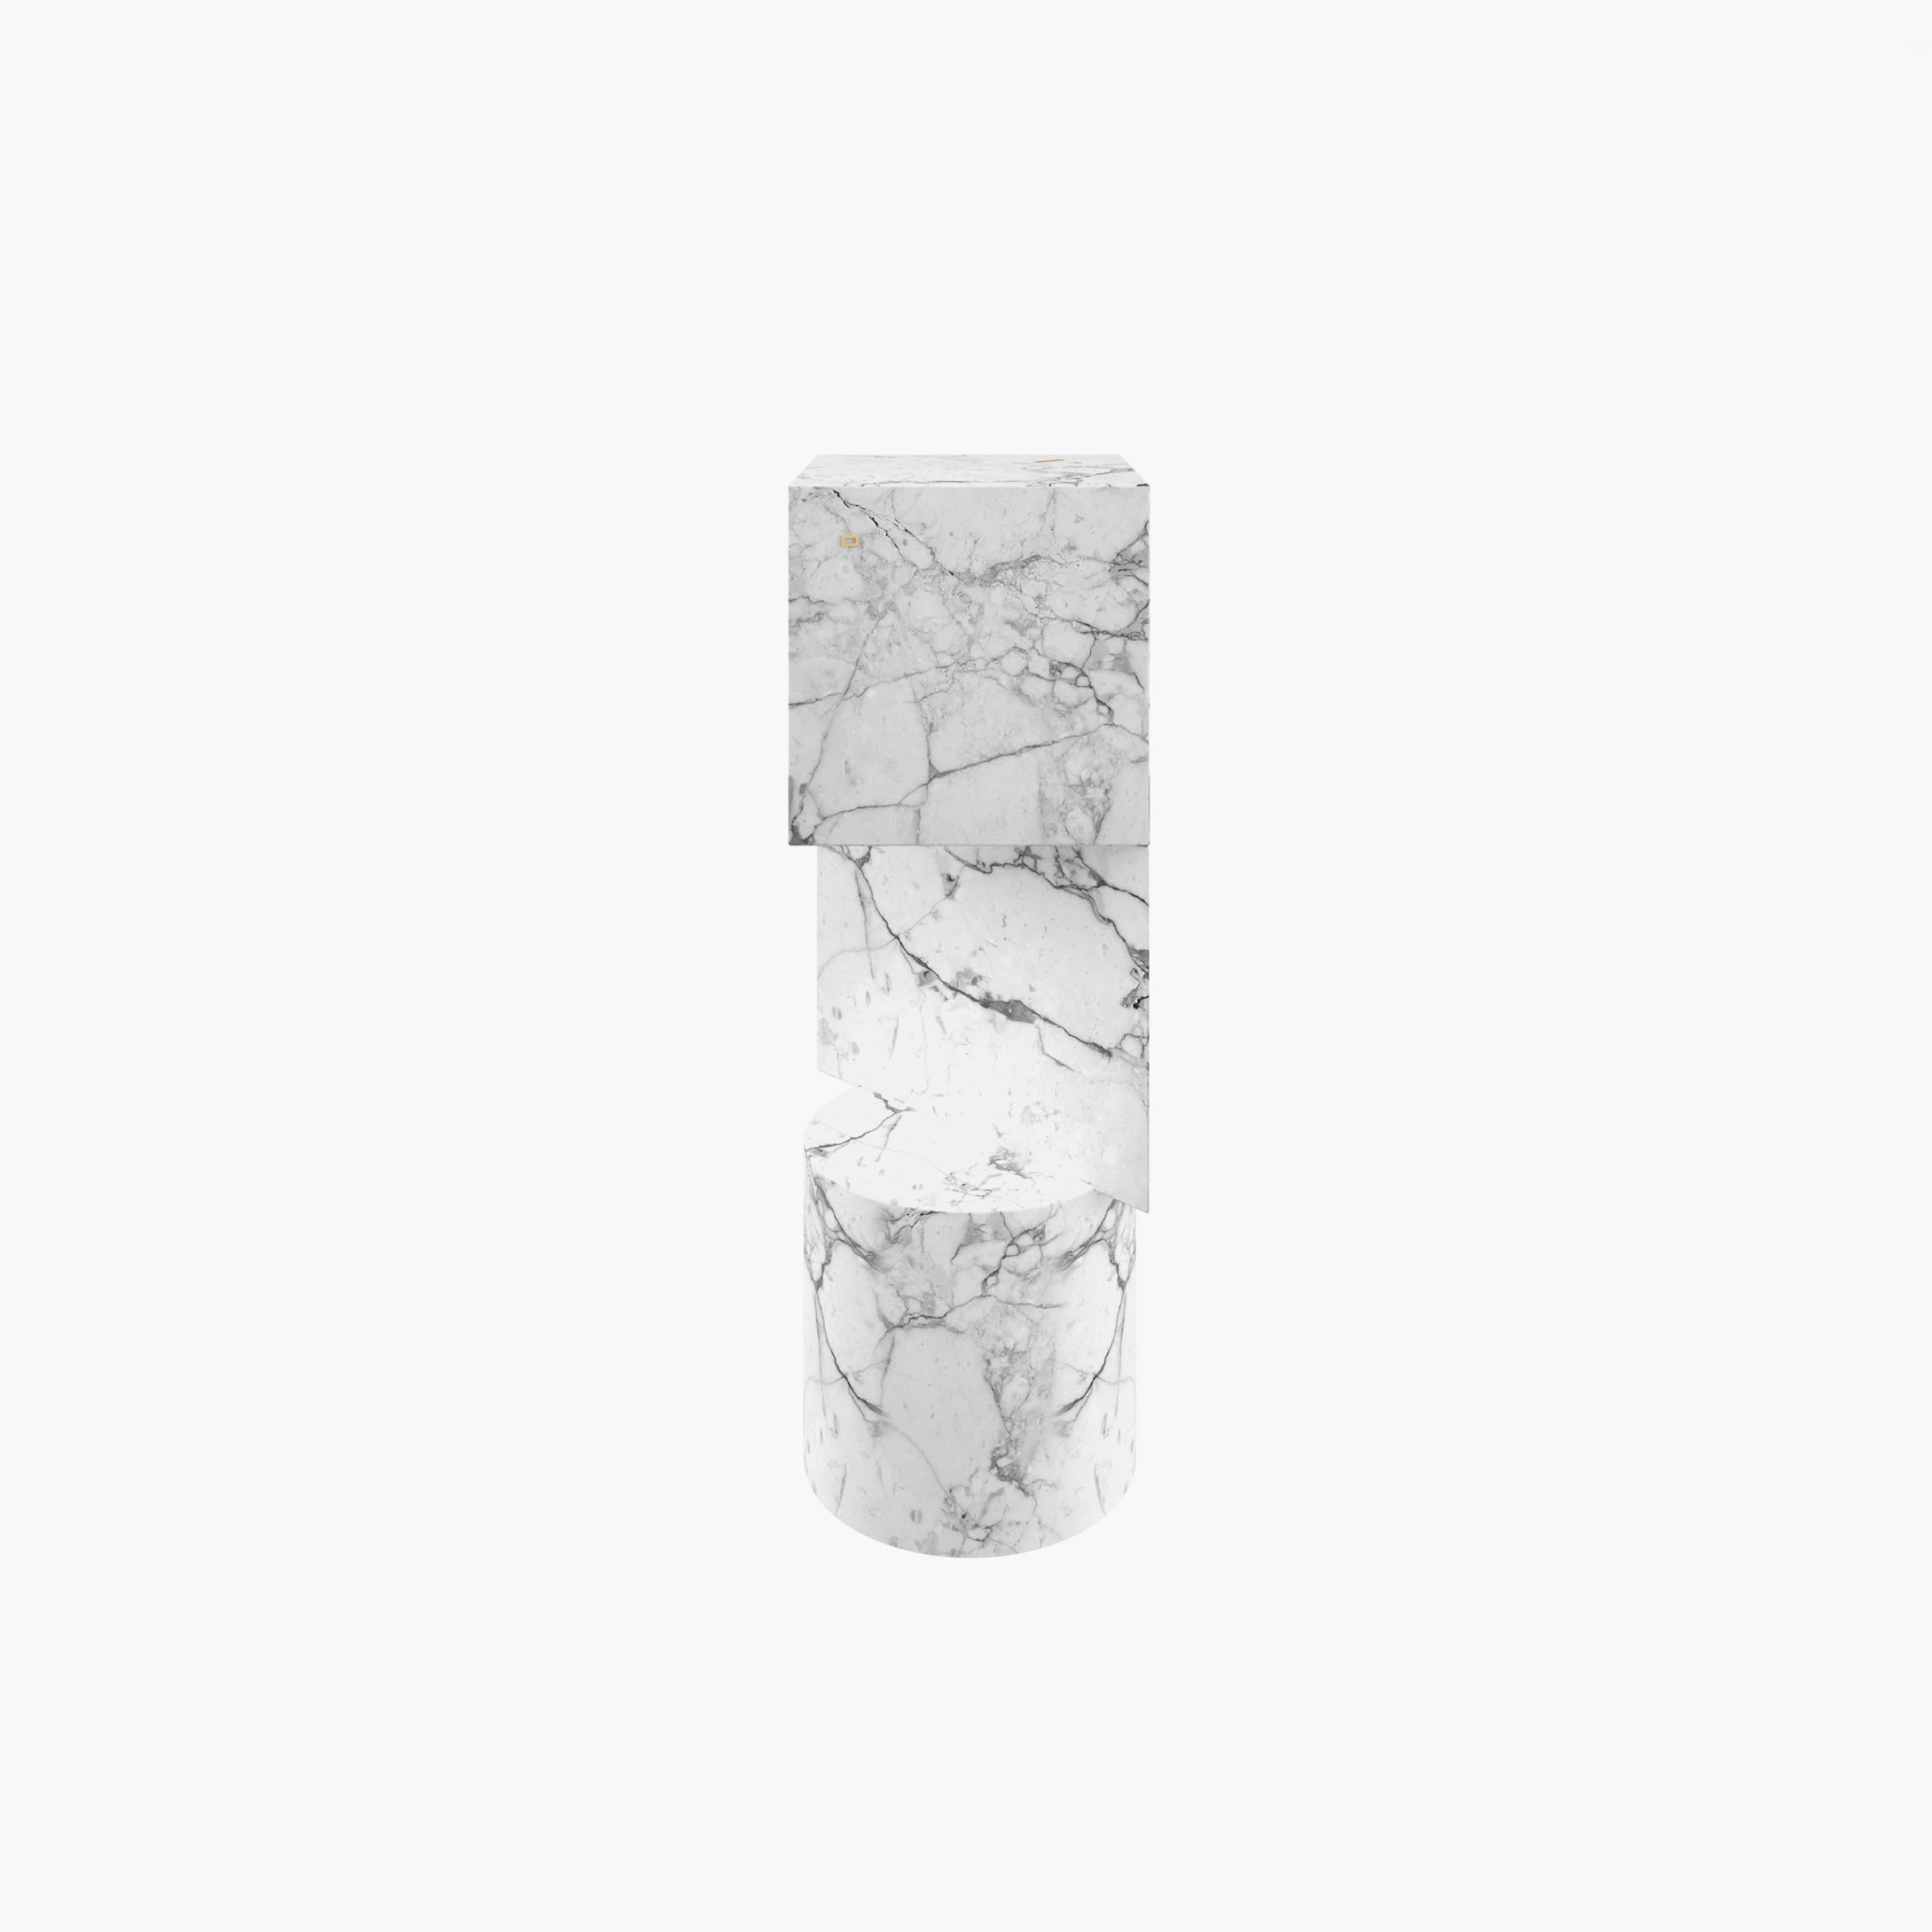 Konsole Zylinder Quader Prisma Weiss Arabescato Marmor hochwertig Wohnzimmer moderne Kunst 